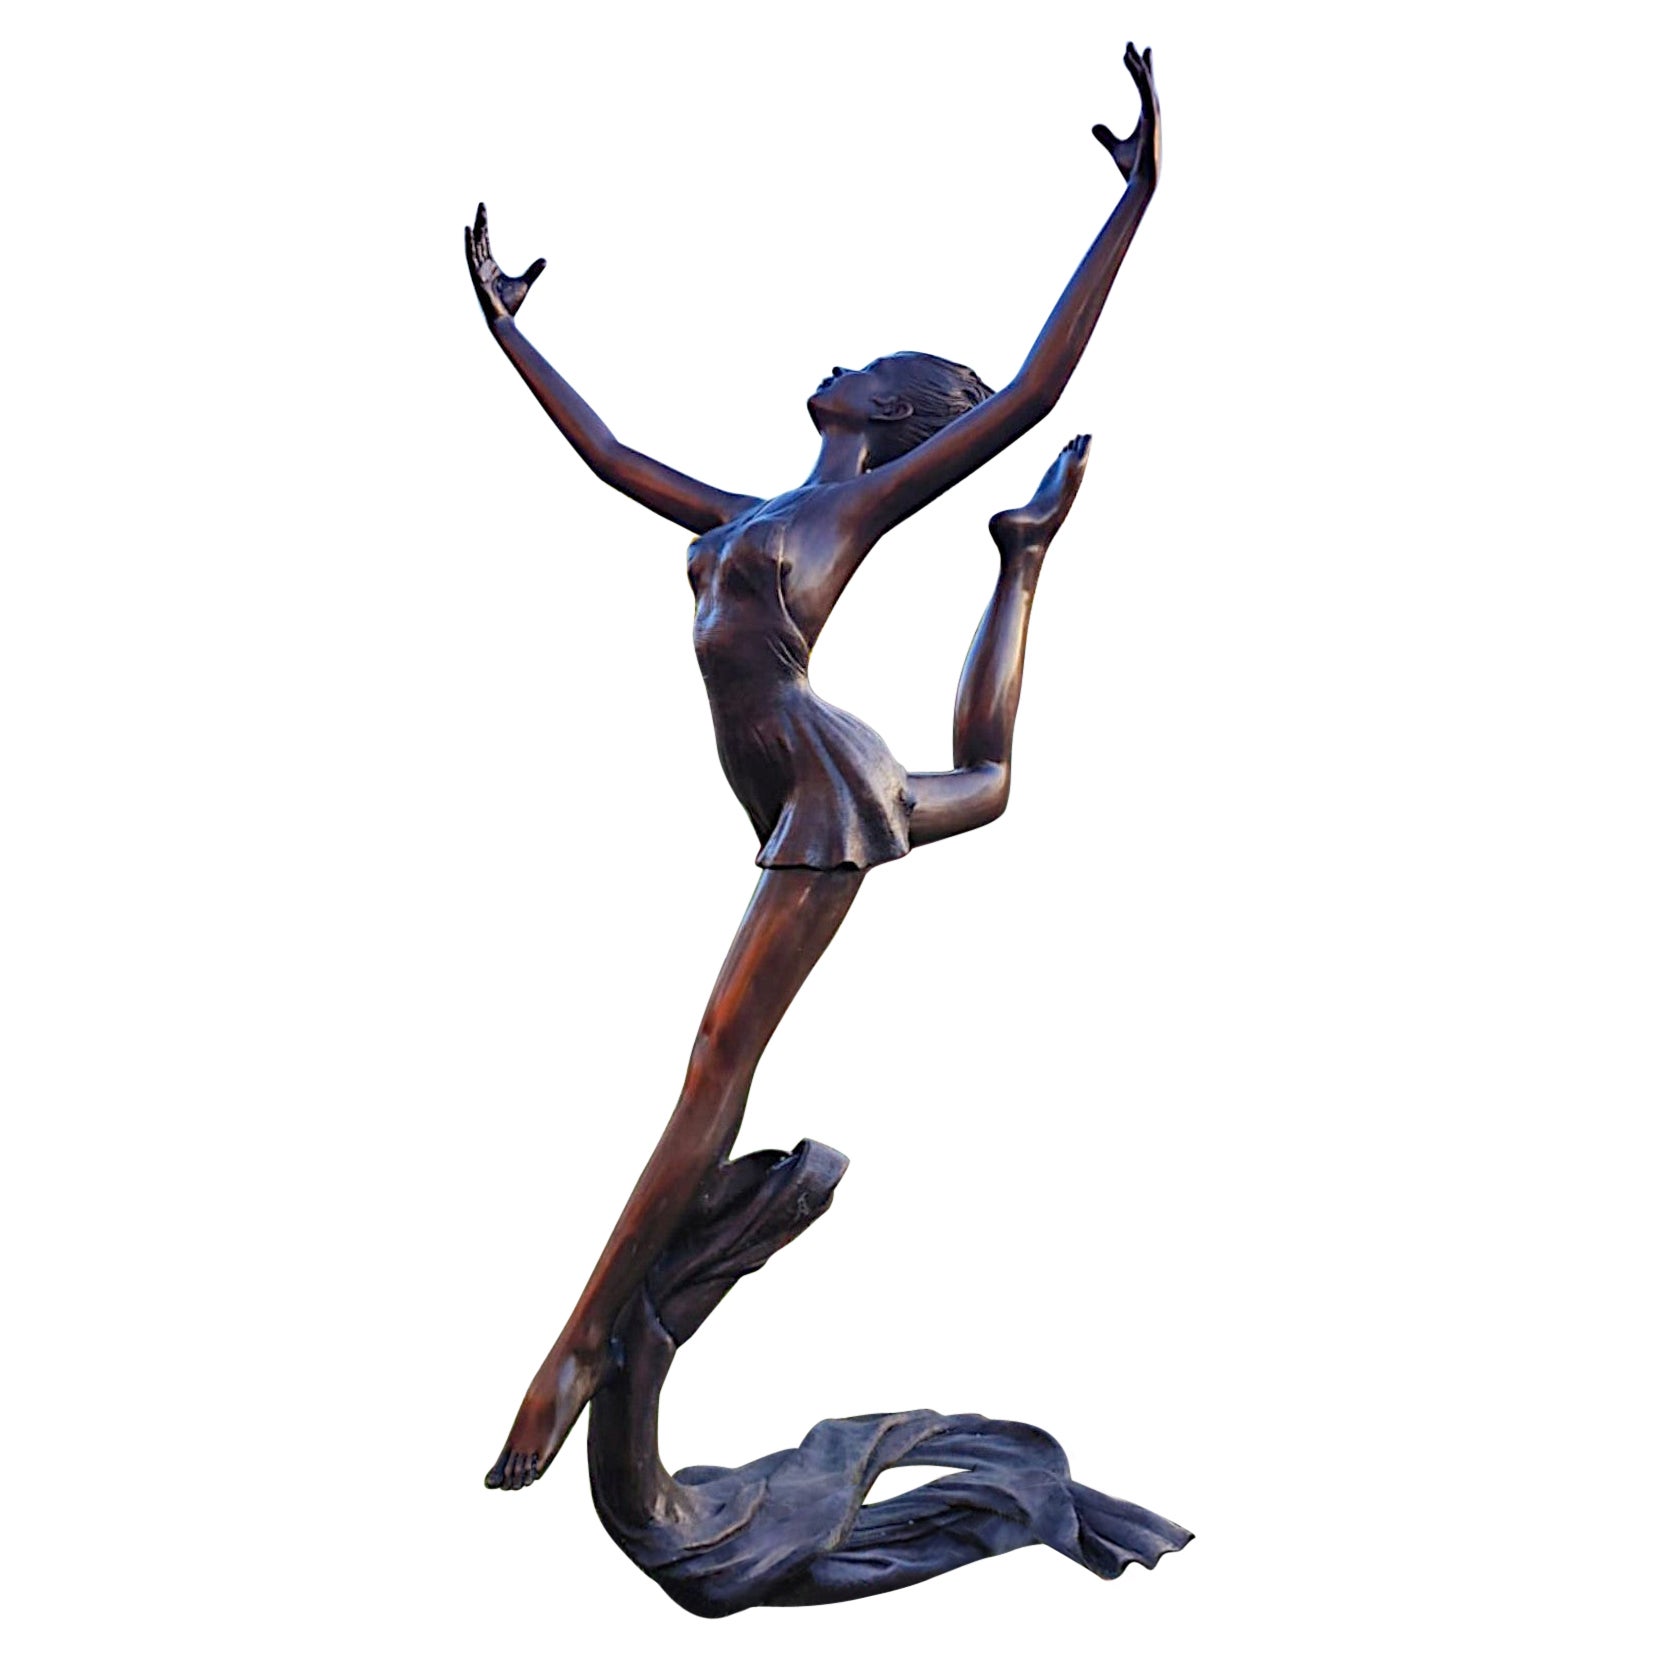 Superbe sculpture figurative d'une danseuse de ballet